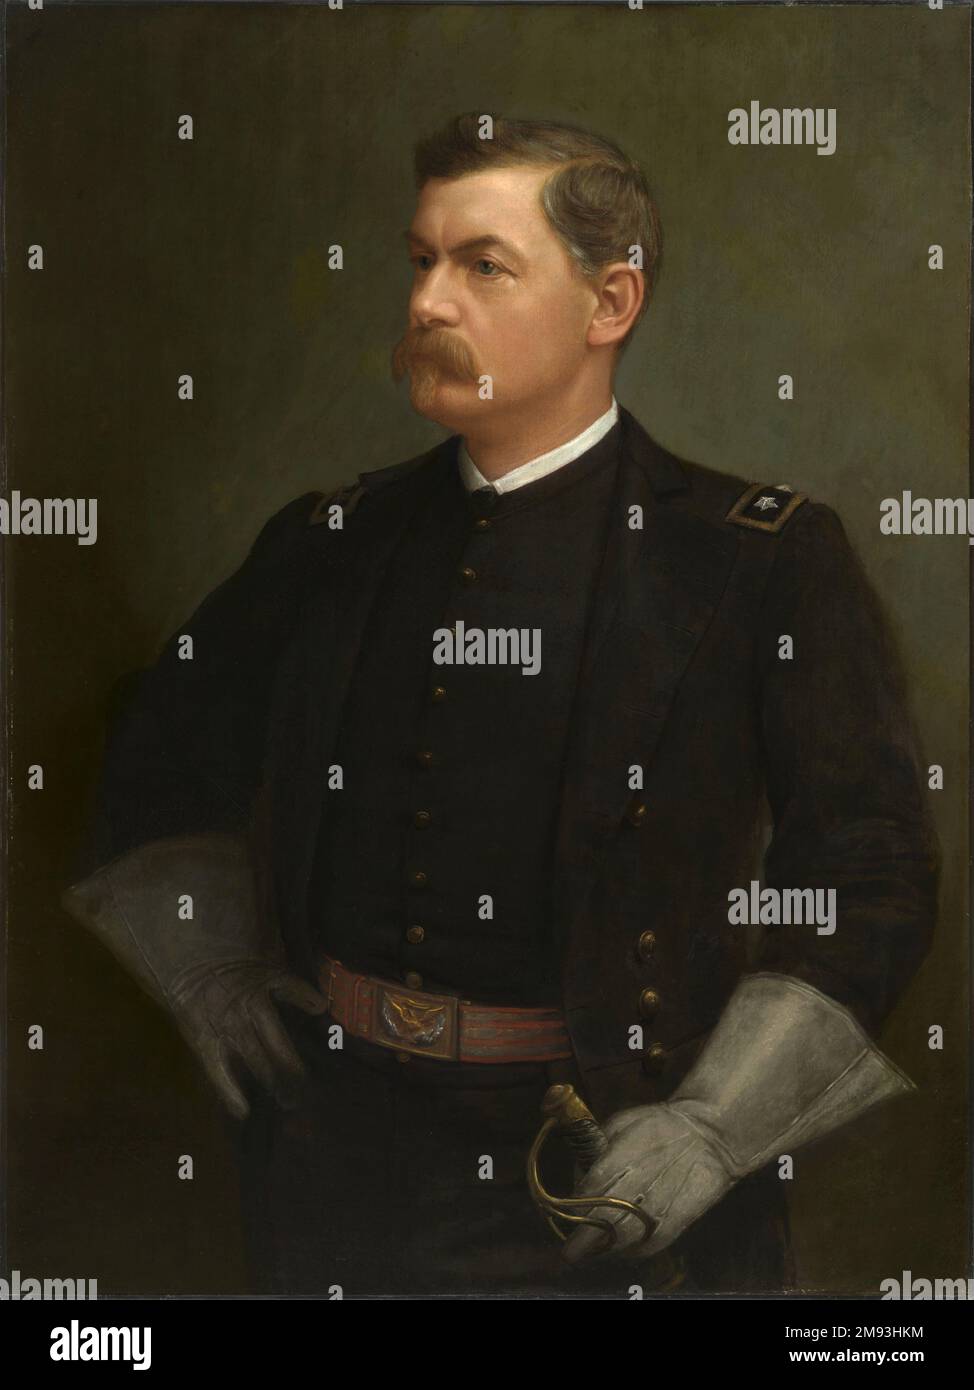 Ein Porträt von George McClellan, gemalt von Julien Scott. Generalmajor George B. McClellan befehligte die Potomac-Armee und war während des Amerikanischen Bürgerkriegs Befehlshaber der US-Armee Stockfoto